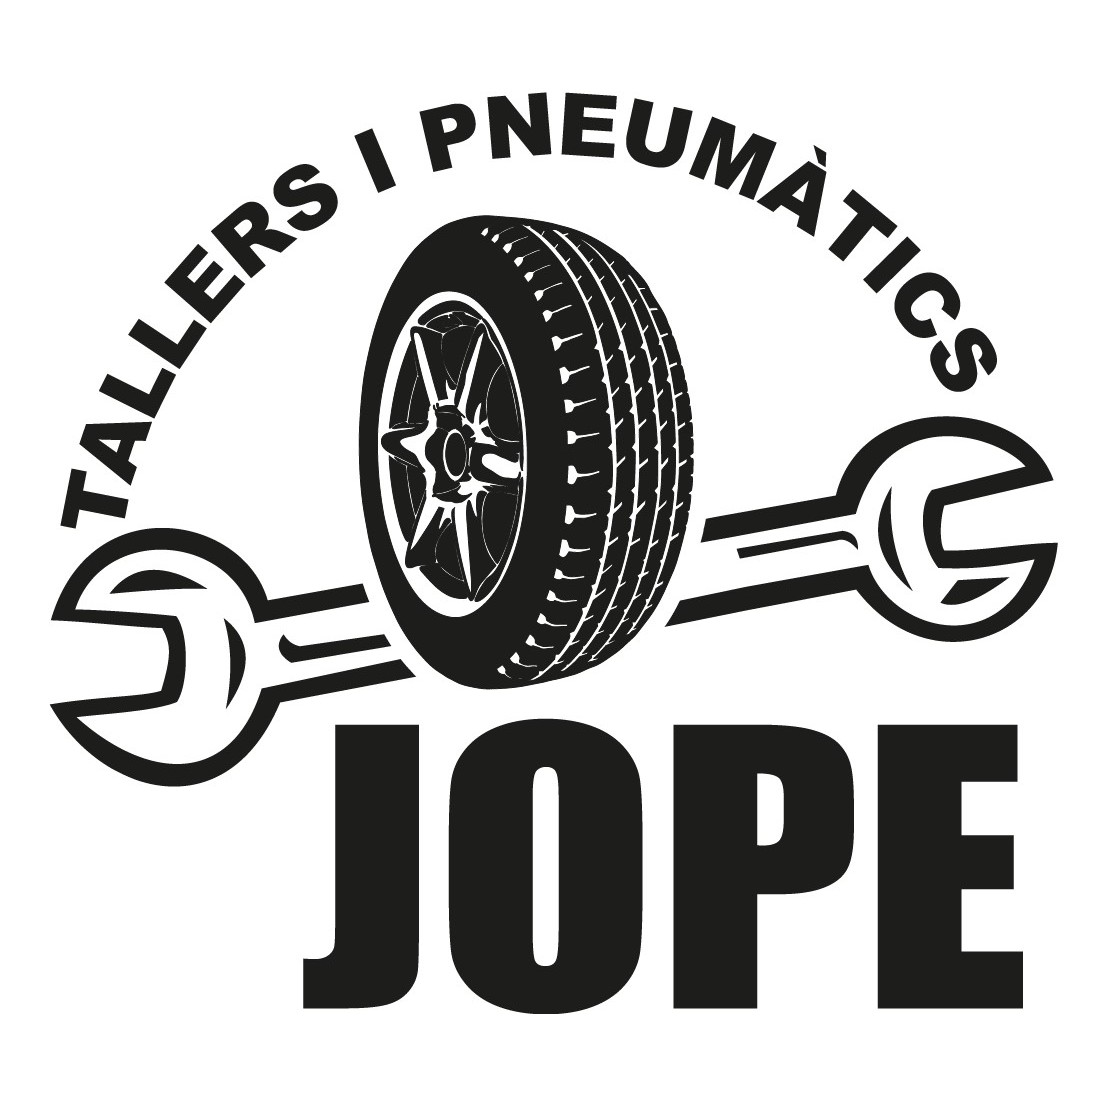 Tallers i Pneumàtics Jope Logo